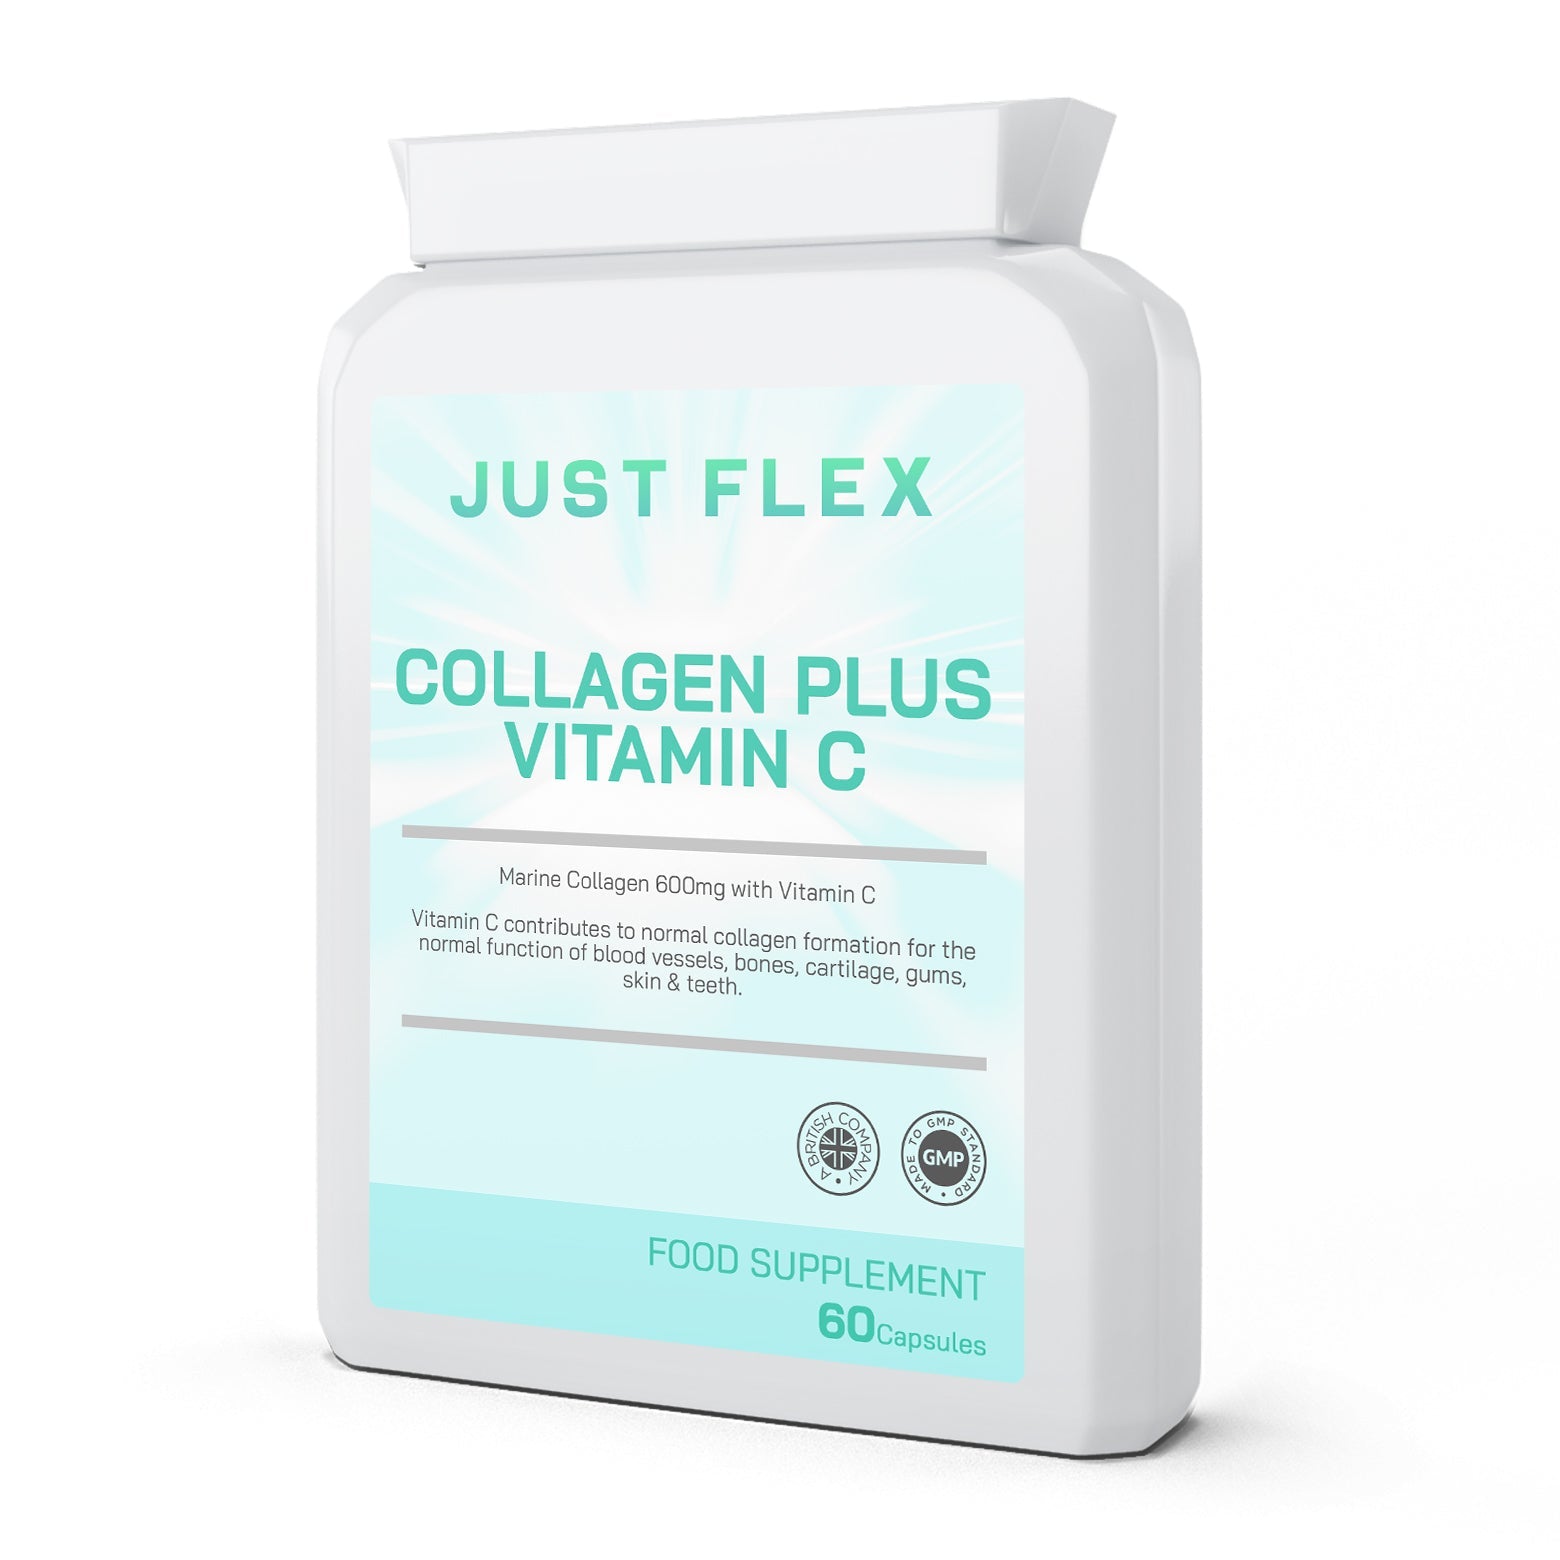 Just Flex Collagen Plus Vitamin C 60 Capsules 600mg